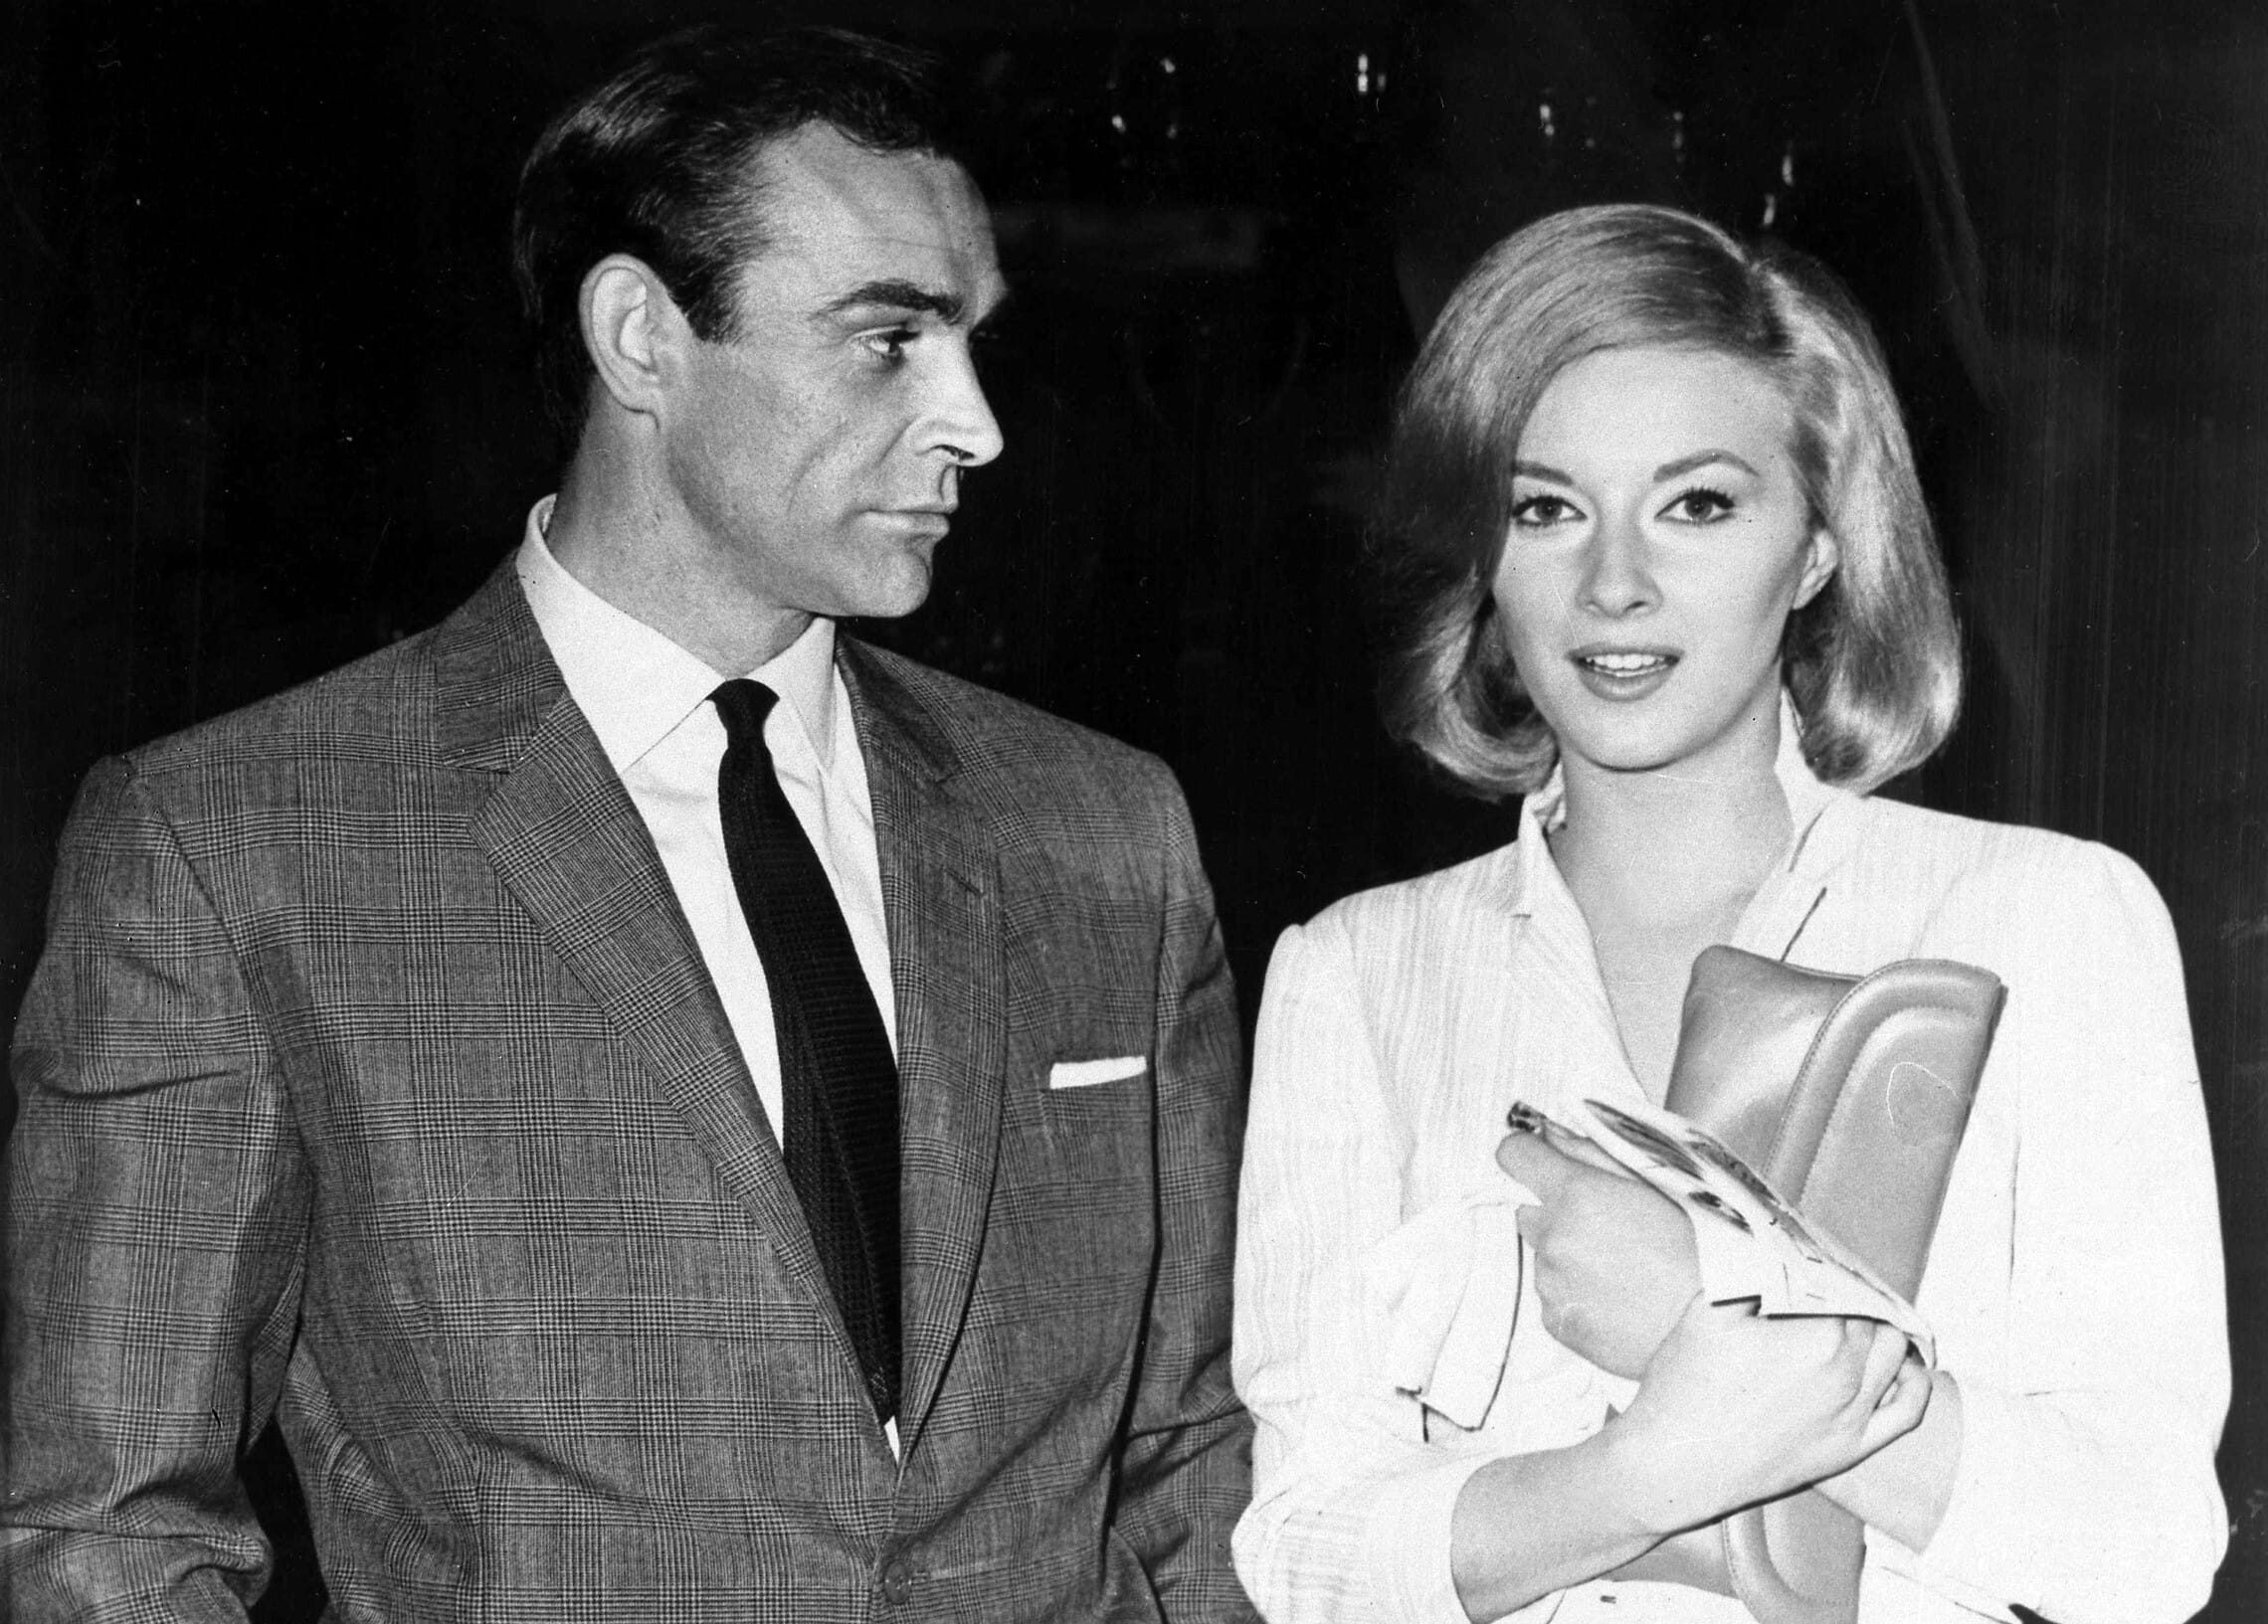 שון קונרי לצד השחקנית האיטלקייה דניאלה ביאנקי באיסטנבול, 25 באפריל 1963 (צילום: AP)